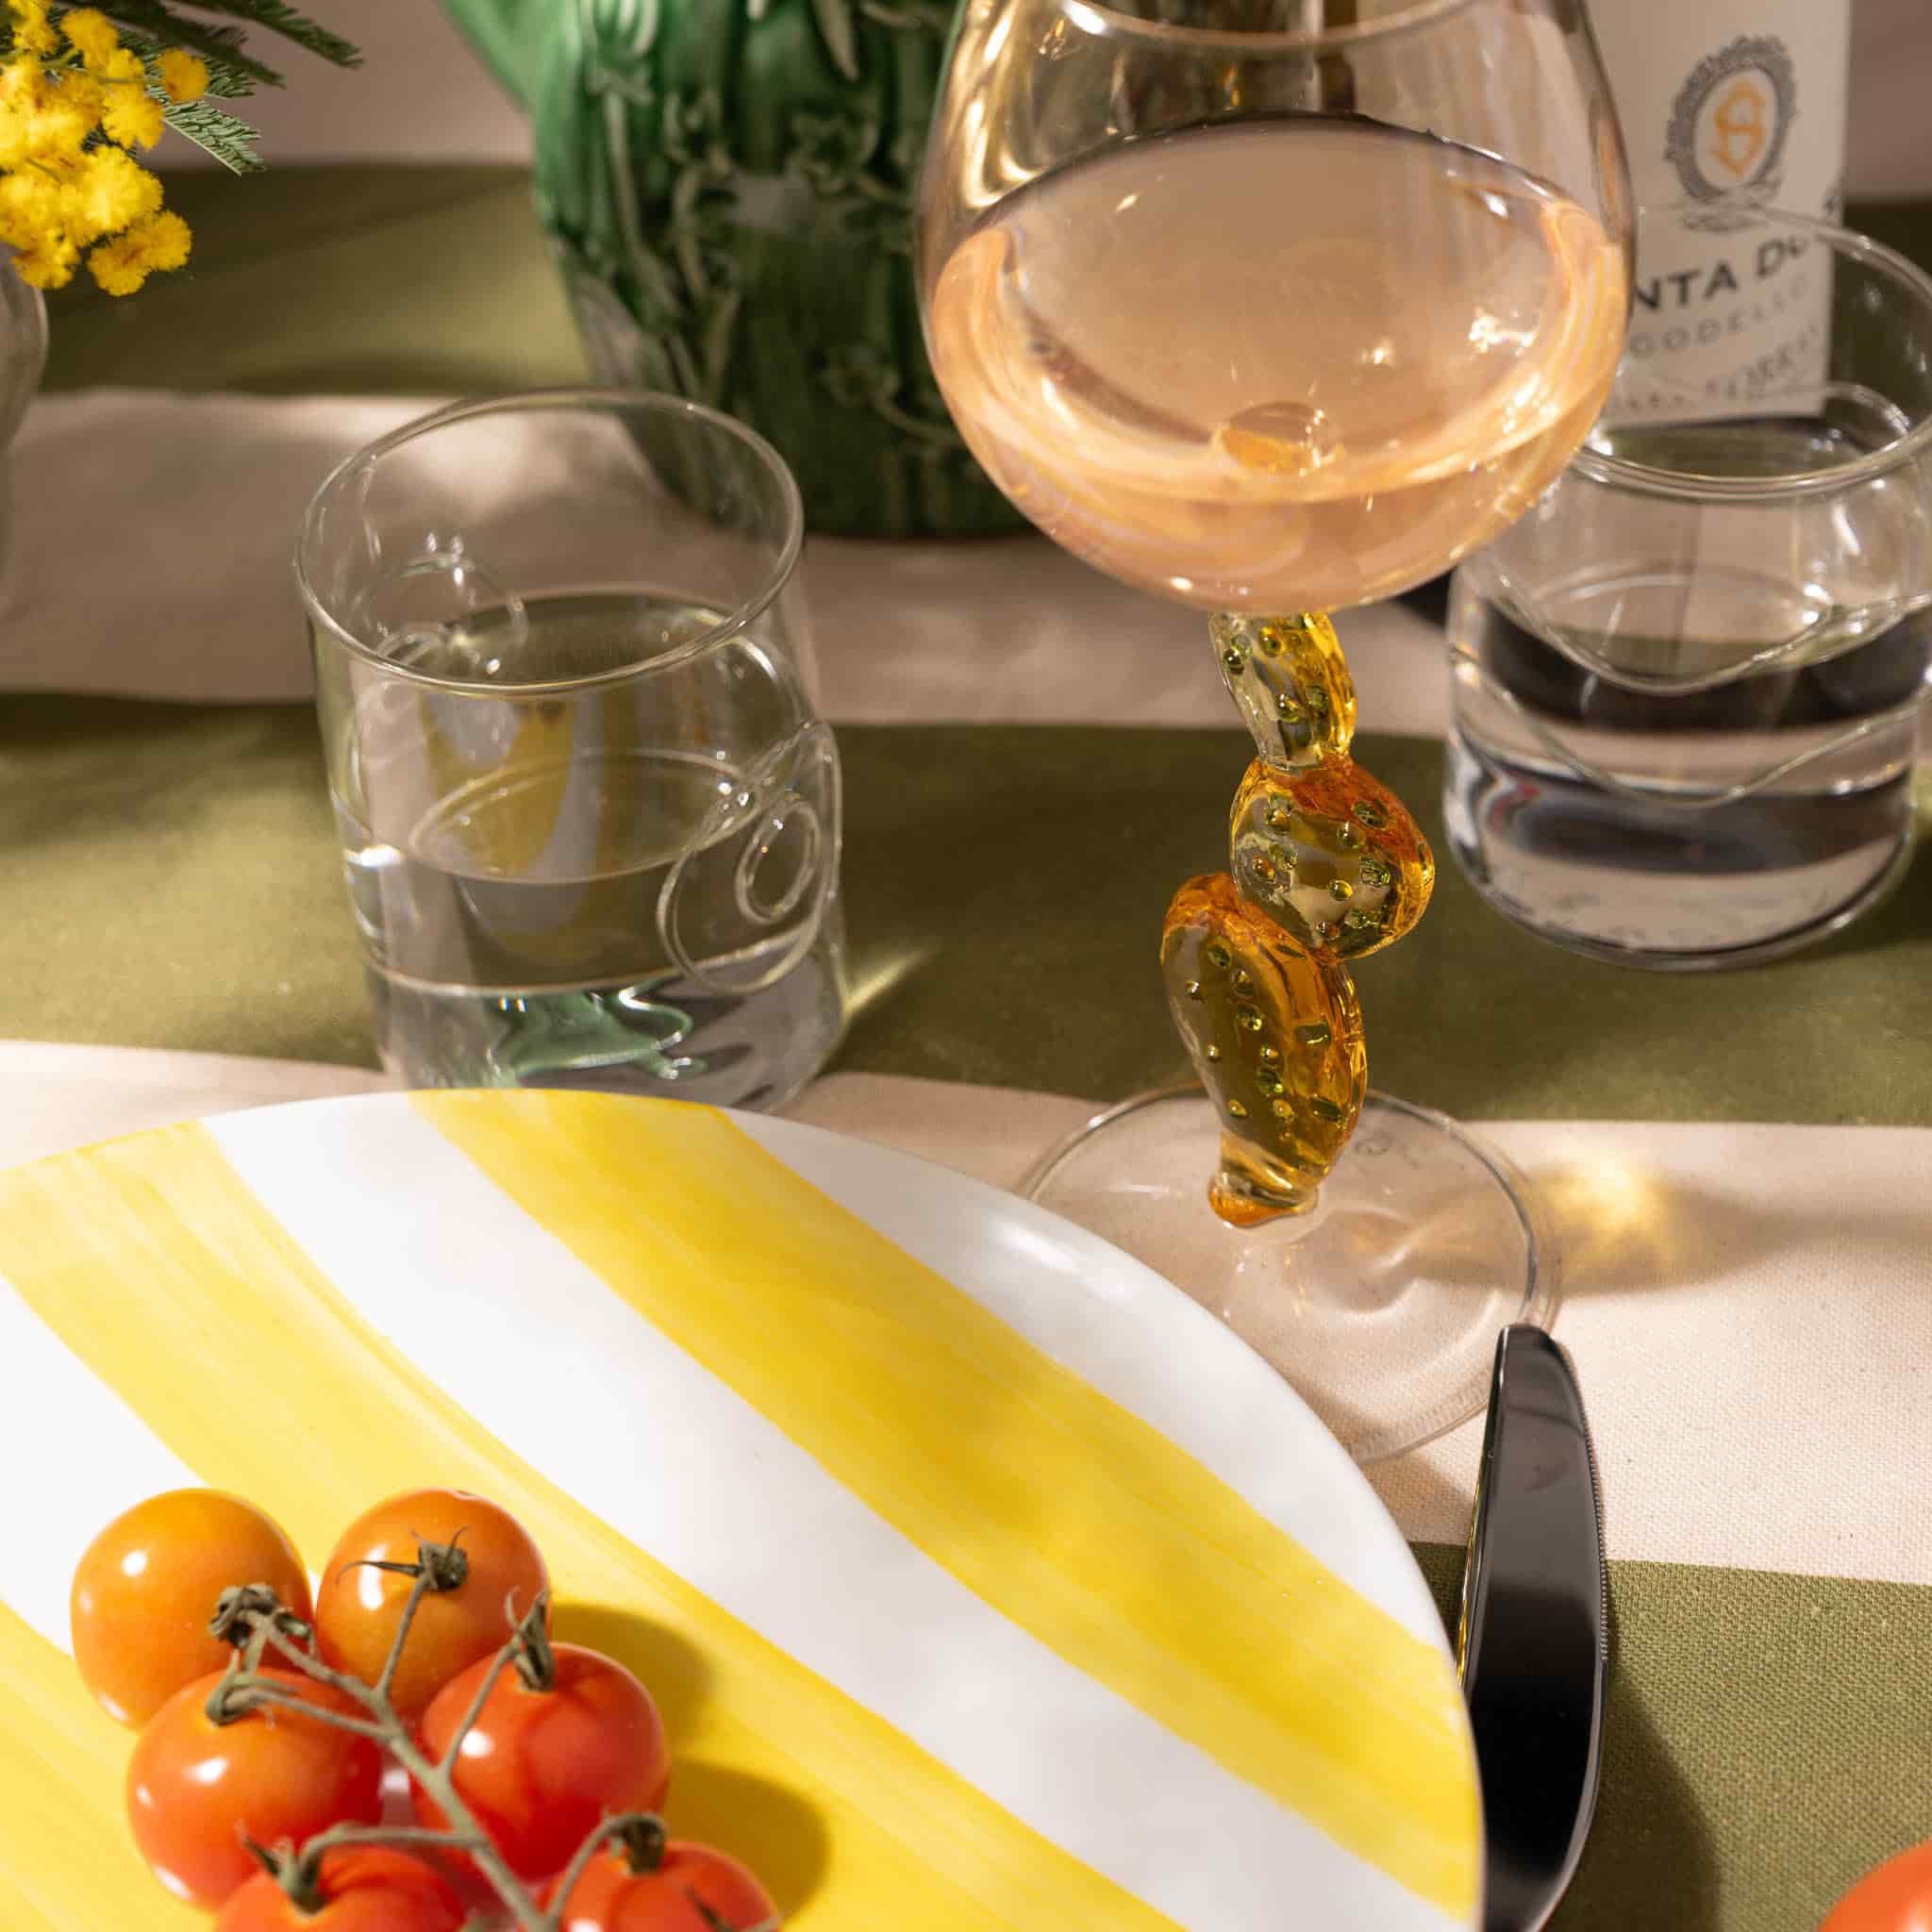 Ichendorf Milano Yellow Cactus Wine Glass, 350ml